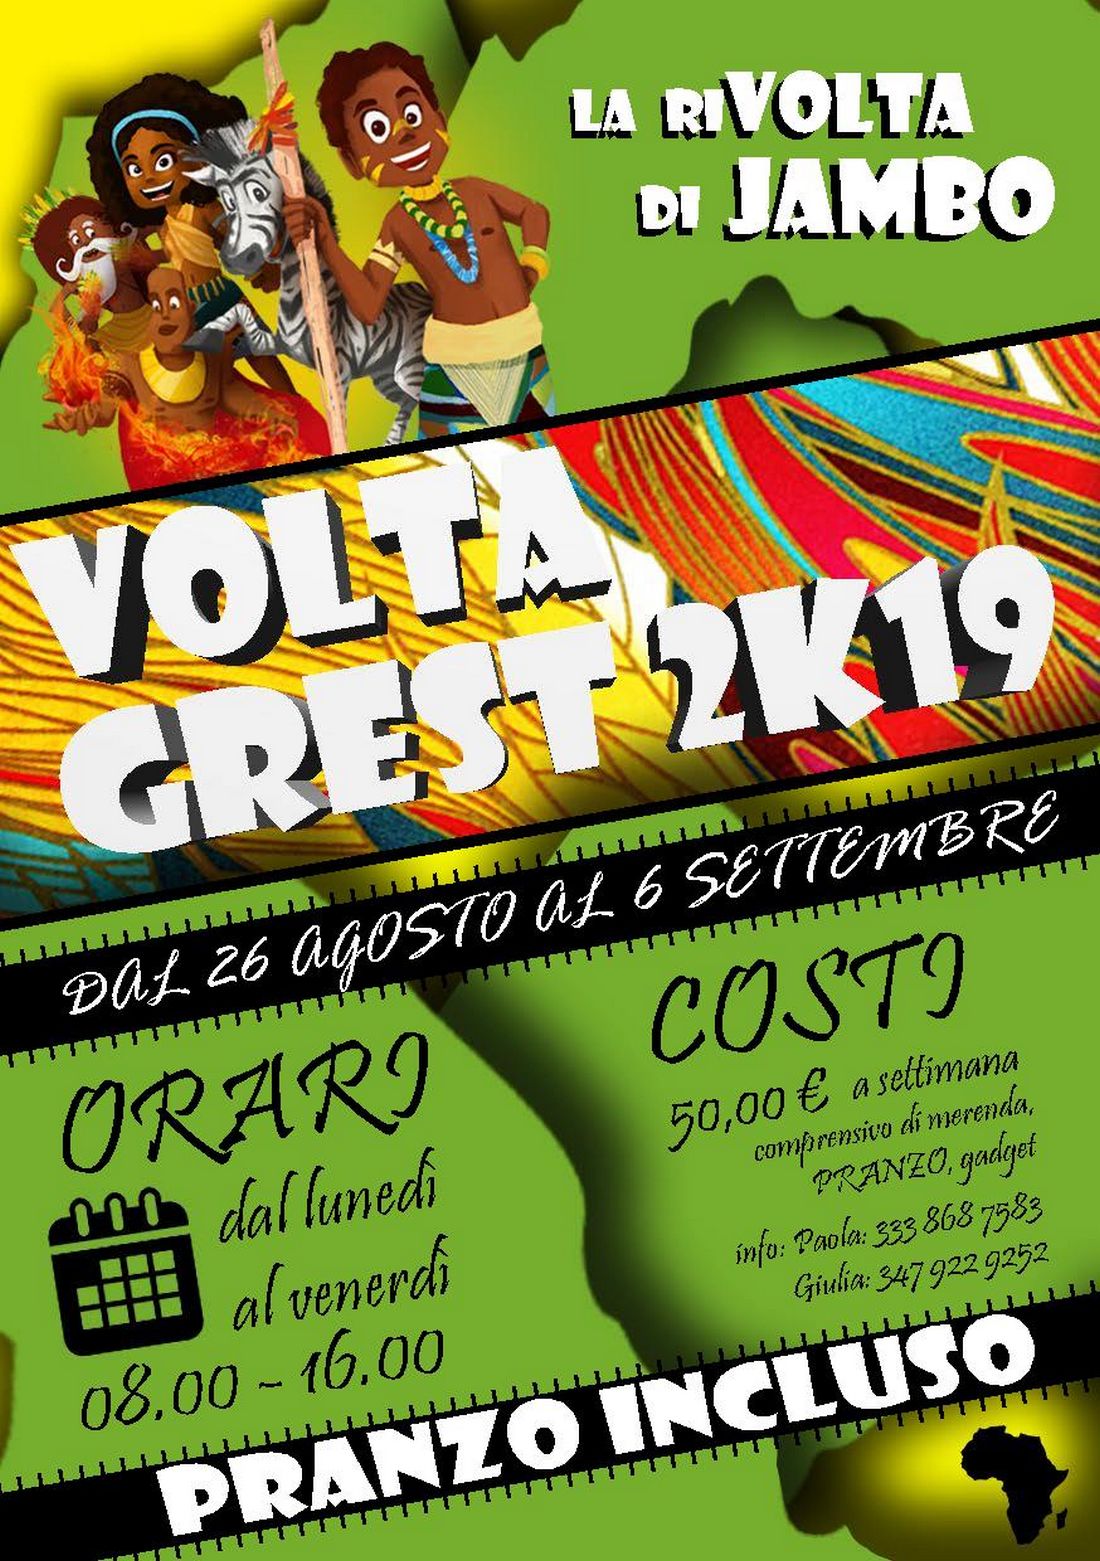 Volantino VoltaGrest 2k19